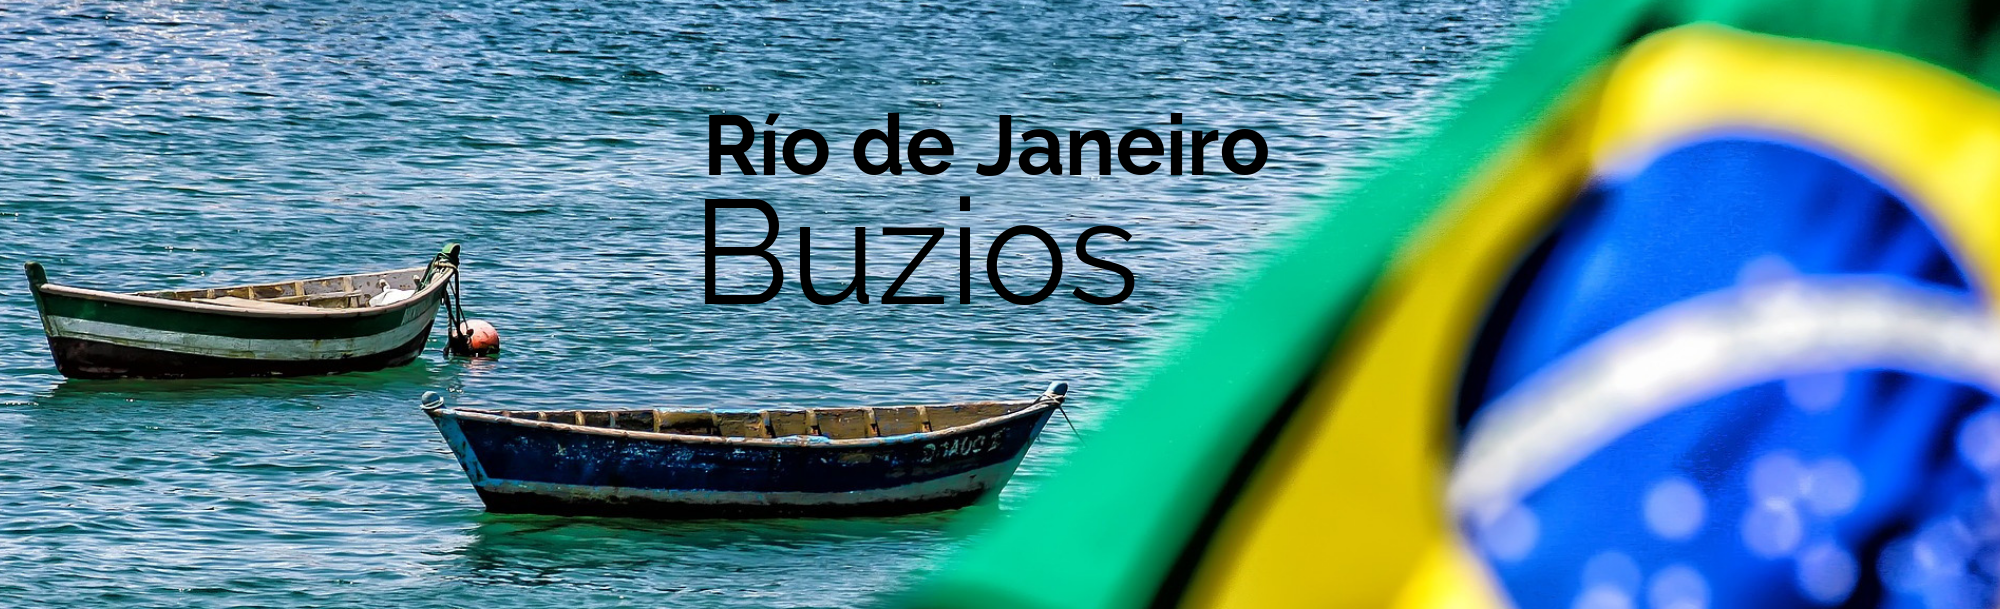 Río de Janeiro | Buzios